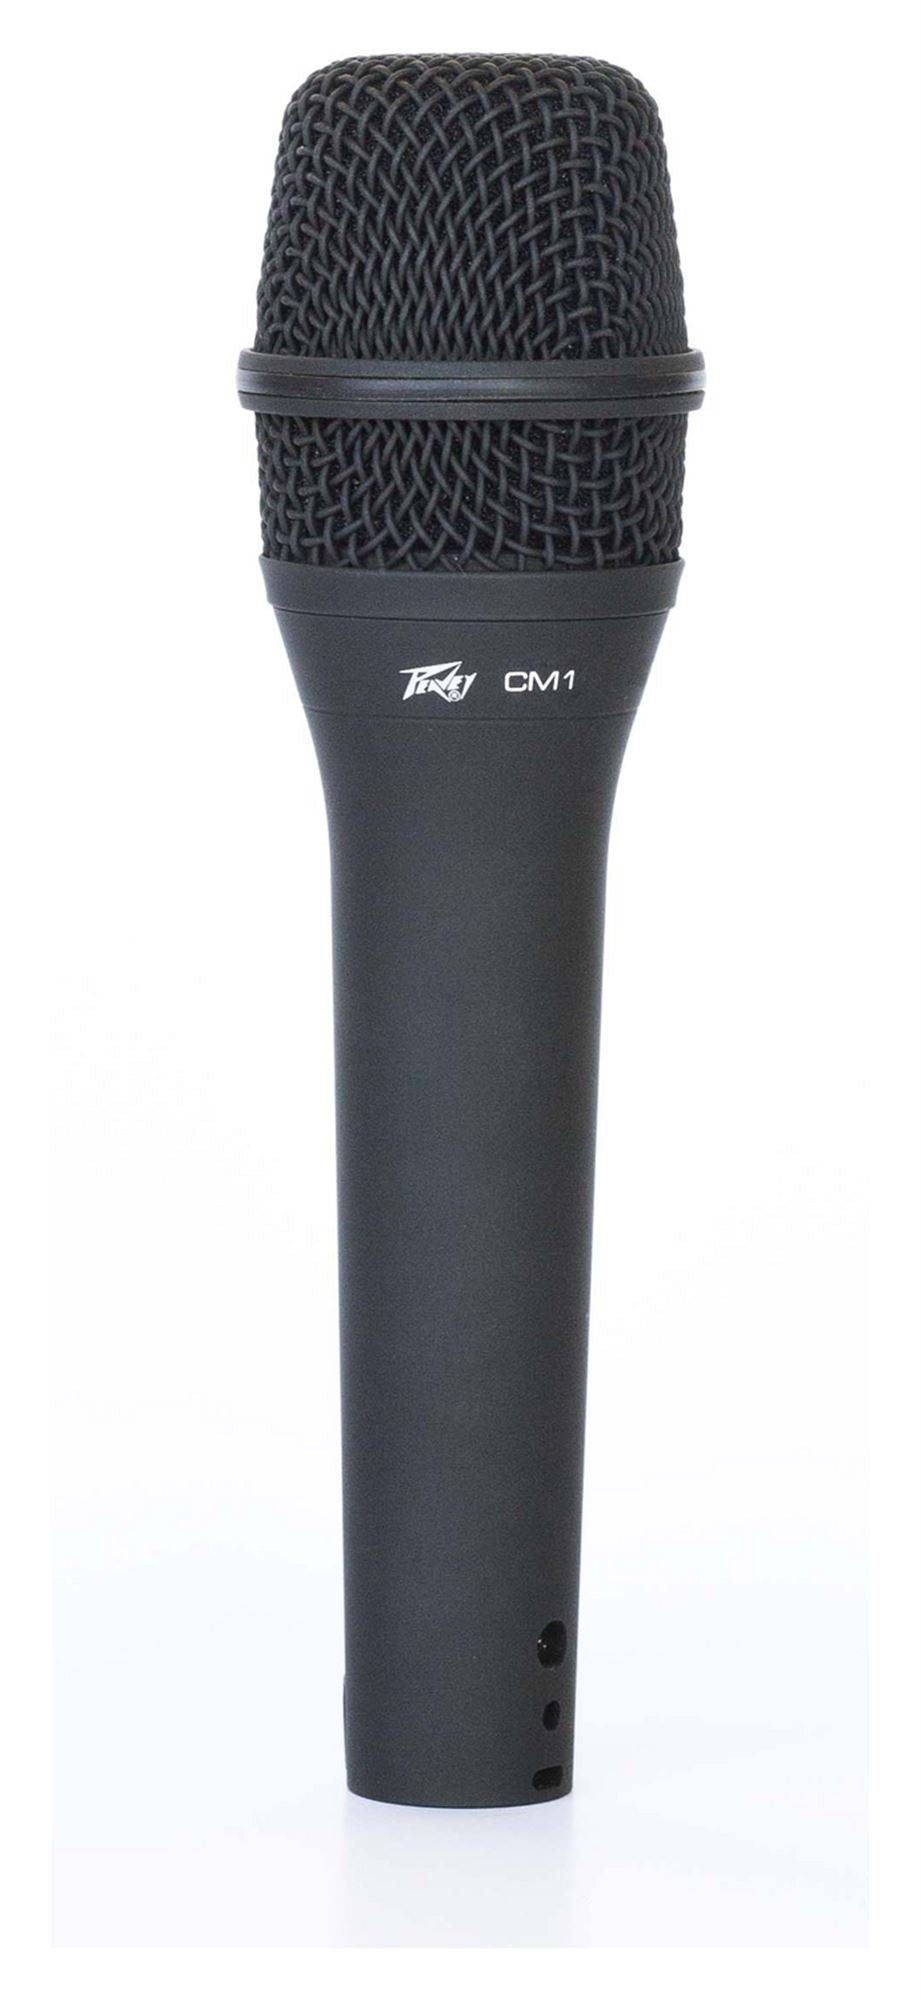 Peavey CM1 Handheld Condenser Microphone - Microphones - Peavey